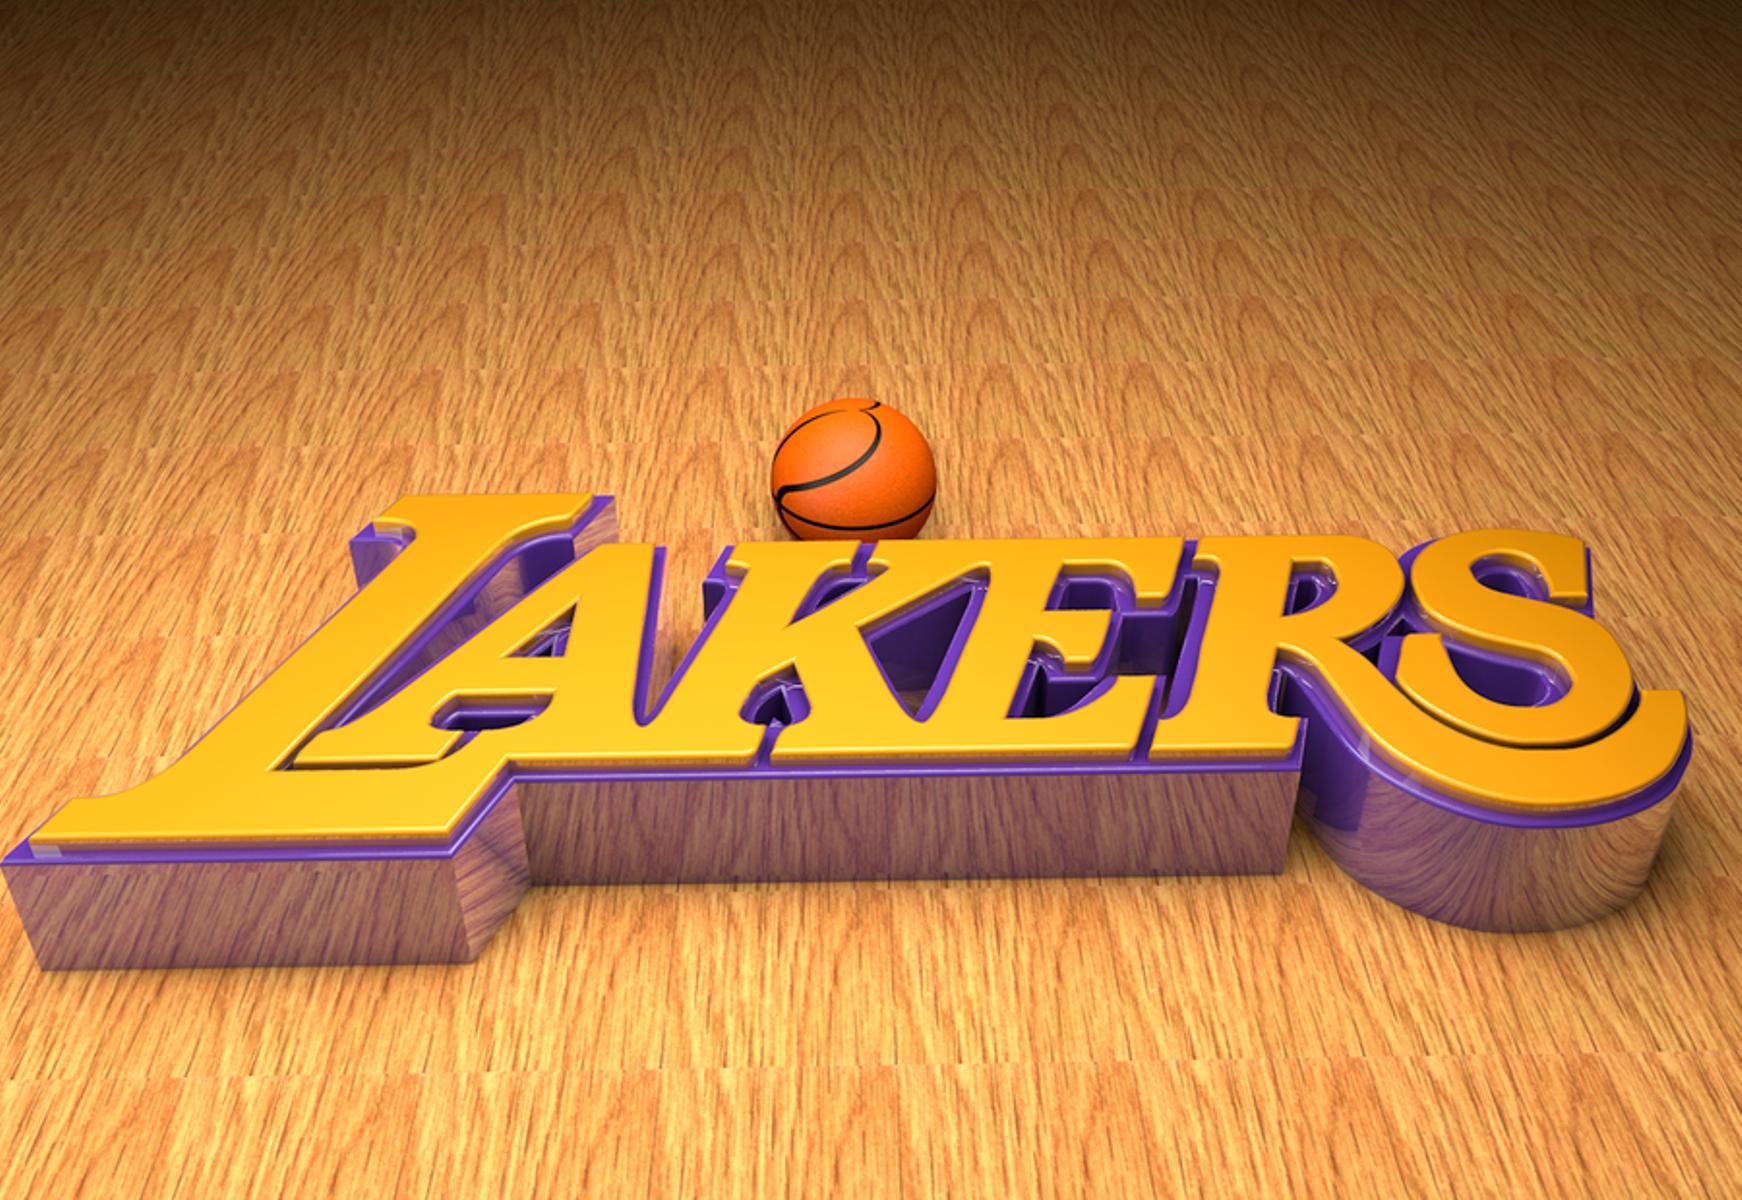 Lakers Logo Wallpaper